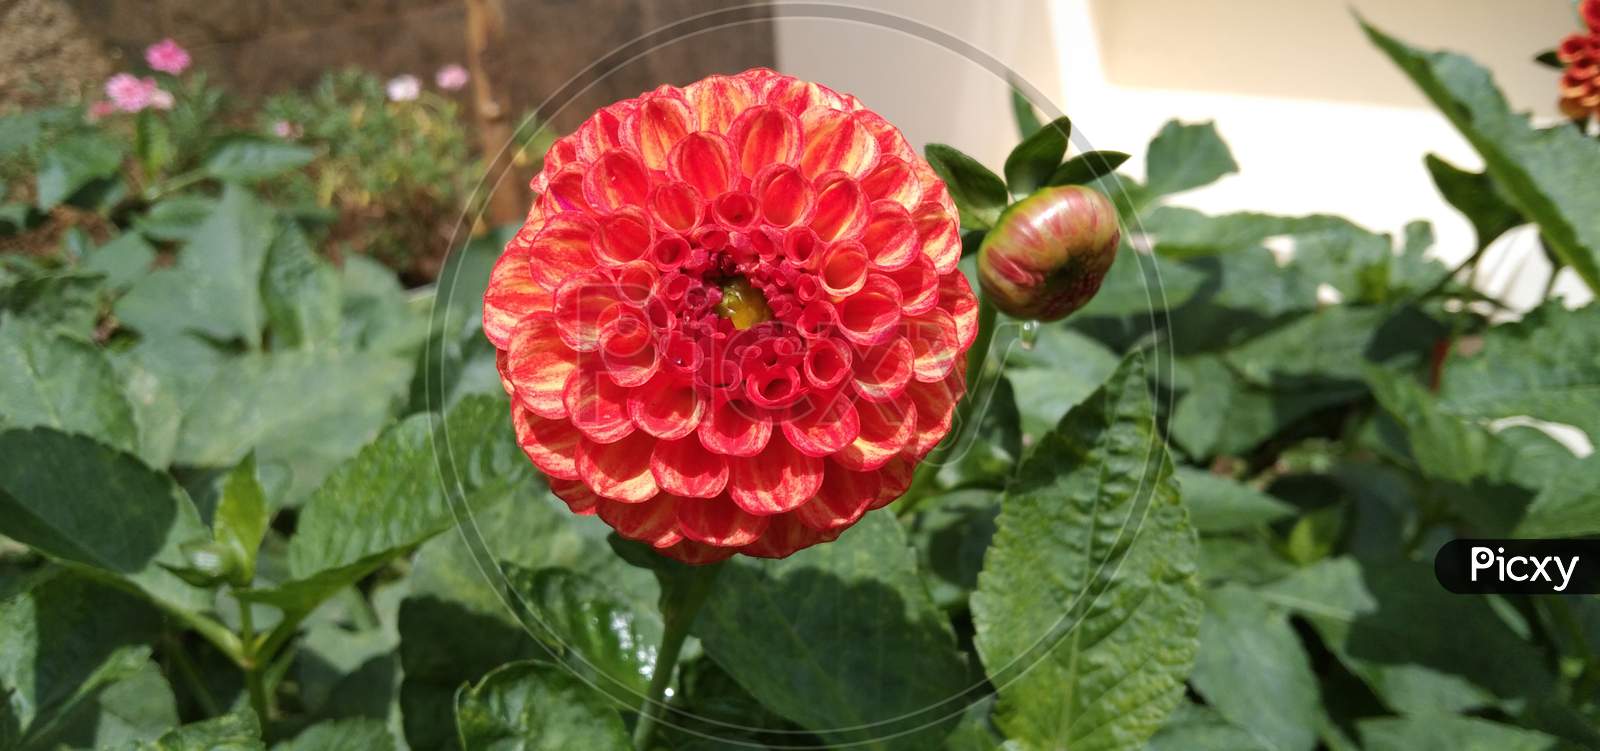 Pom-pom dhalia flower